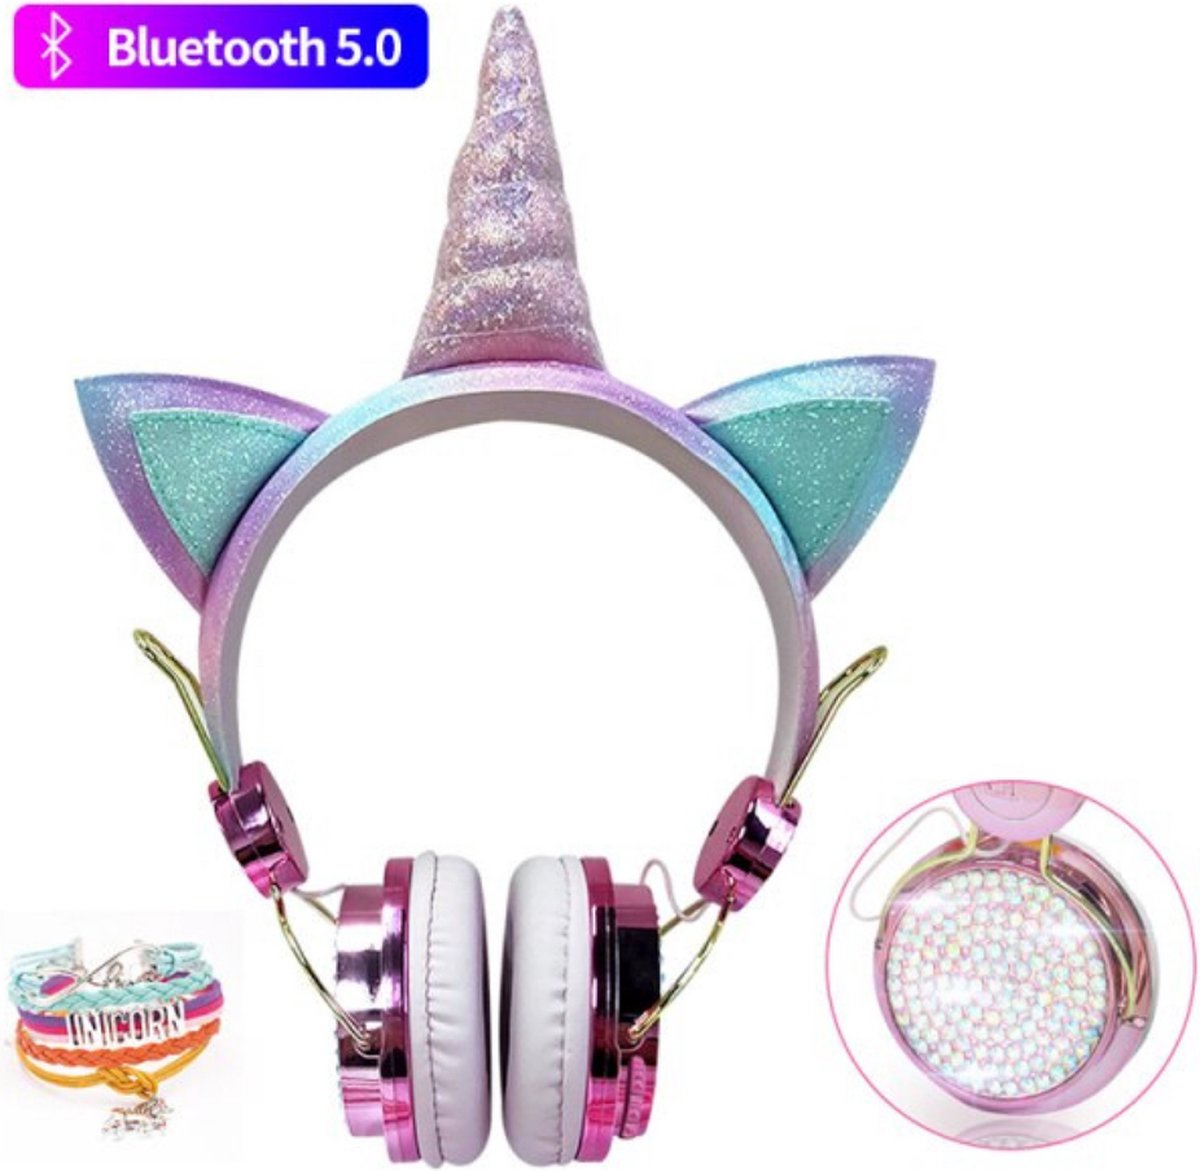 Kidsly Koptelefoon kinderen | Gratis armband | Bluetooth | Unicorn | Hoofdtelefoon kinderen | Koptelefoon | Koptelefoon draadloos | Koptelefoon bluetooth